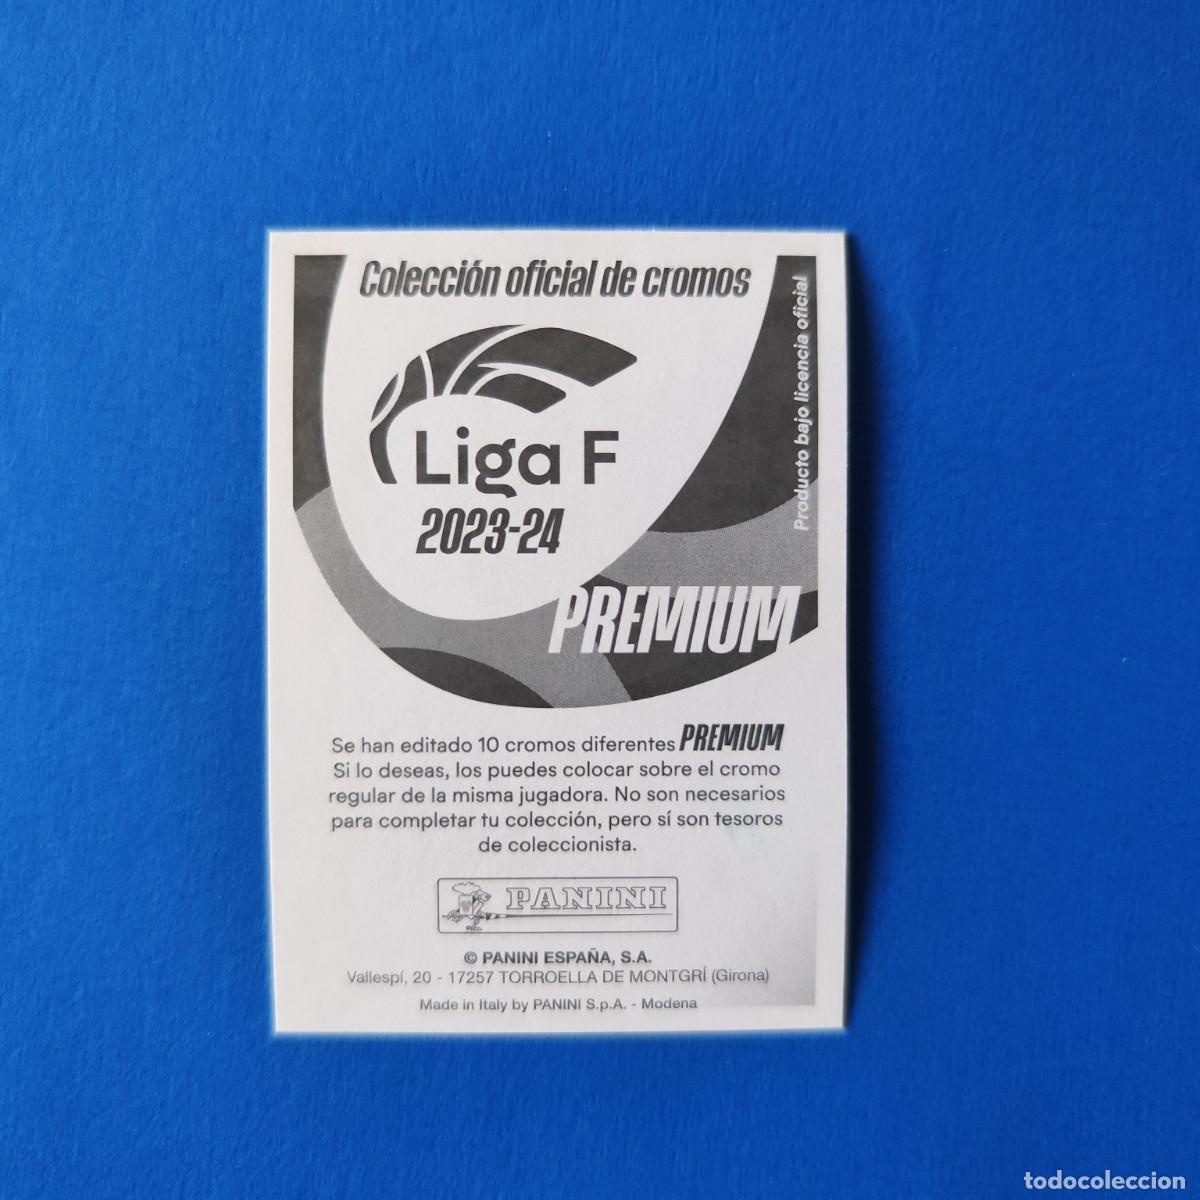 liga este 2023 2024 23 24 panini barcelona barç - Acheter Stickers et cartes  à collectionner de football anciennes sur todocoleccion